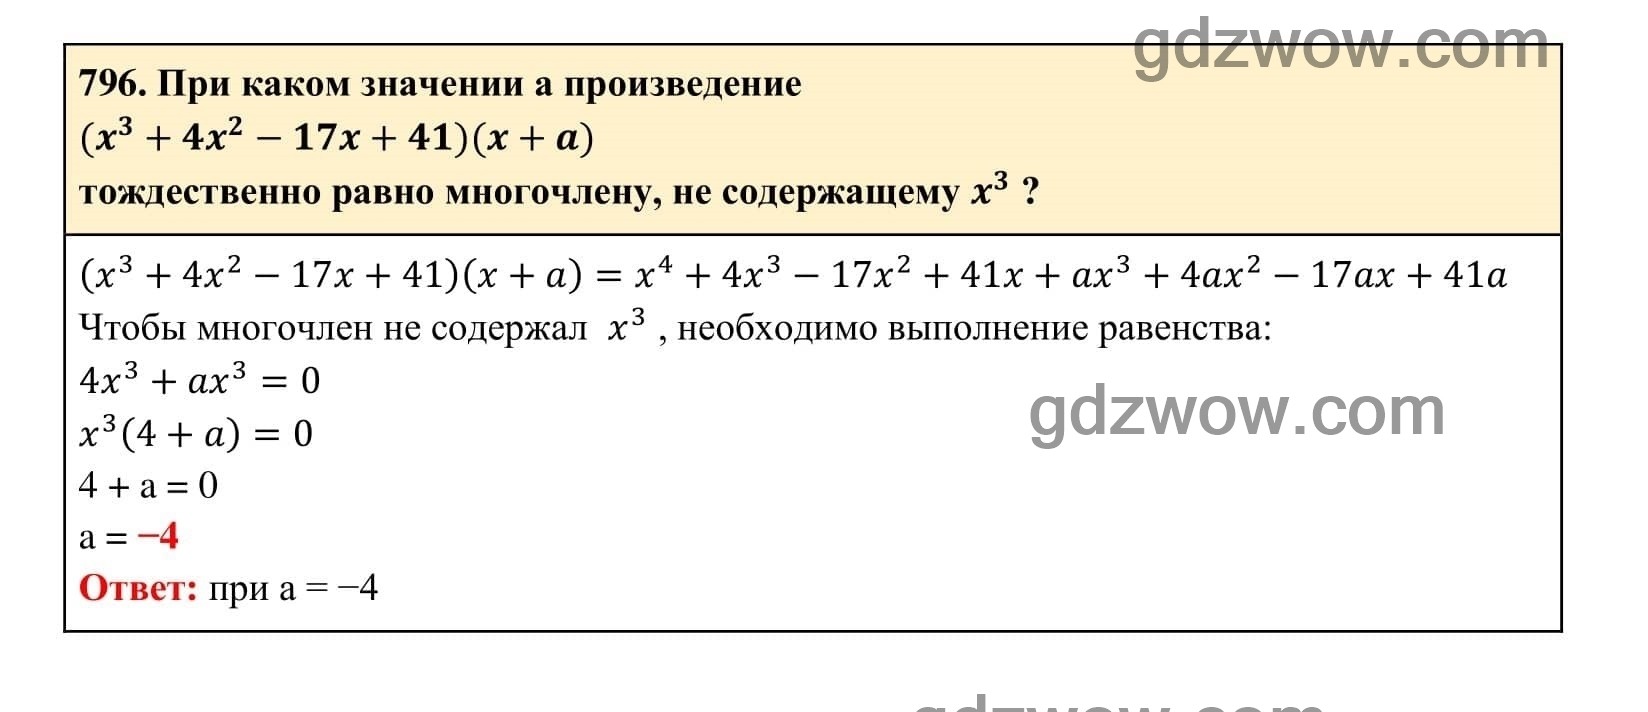 Упражнение 796 - ГДЗ по Алгебре 7 класс Учебник Макарычев (решебник) - GDZwow